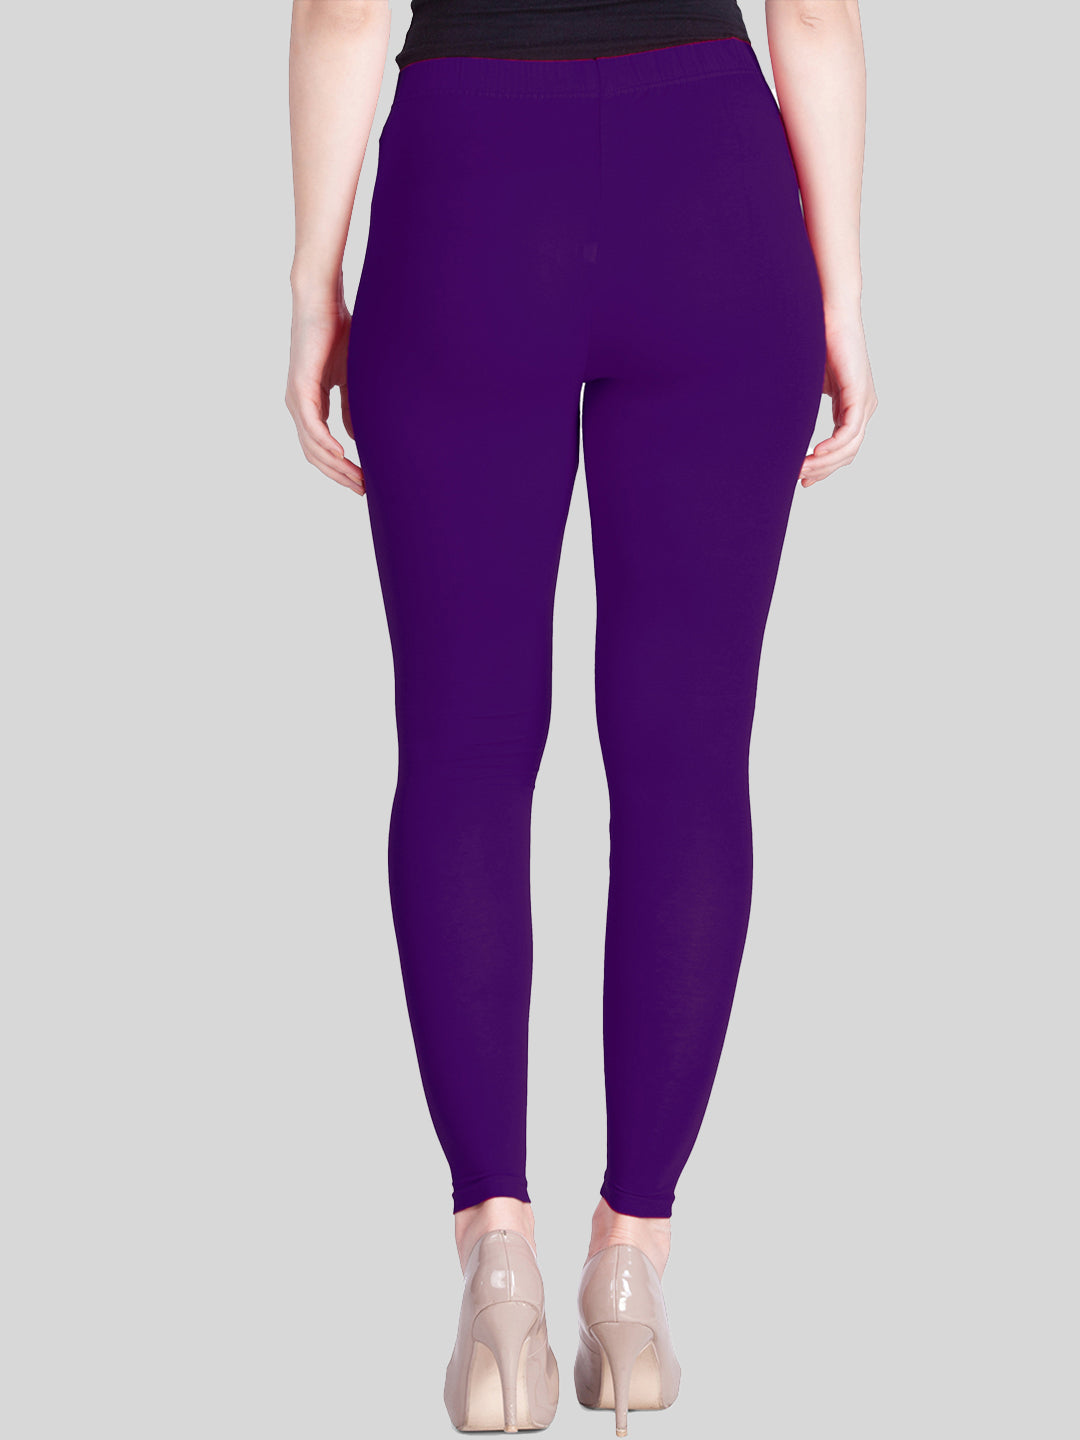 Buy Purple Leggings for Women by KICA Online